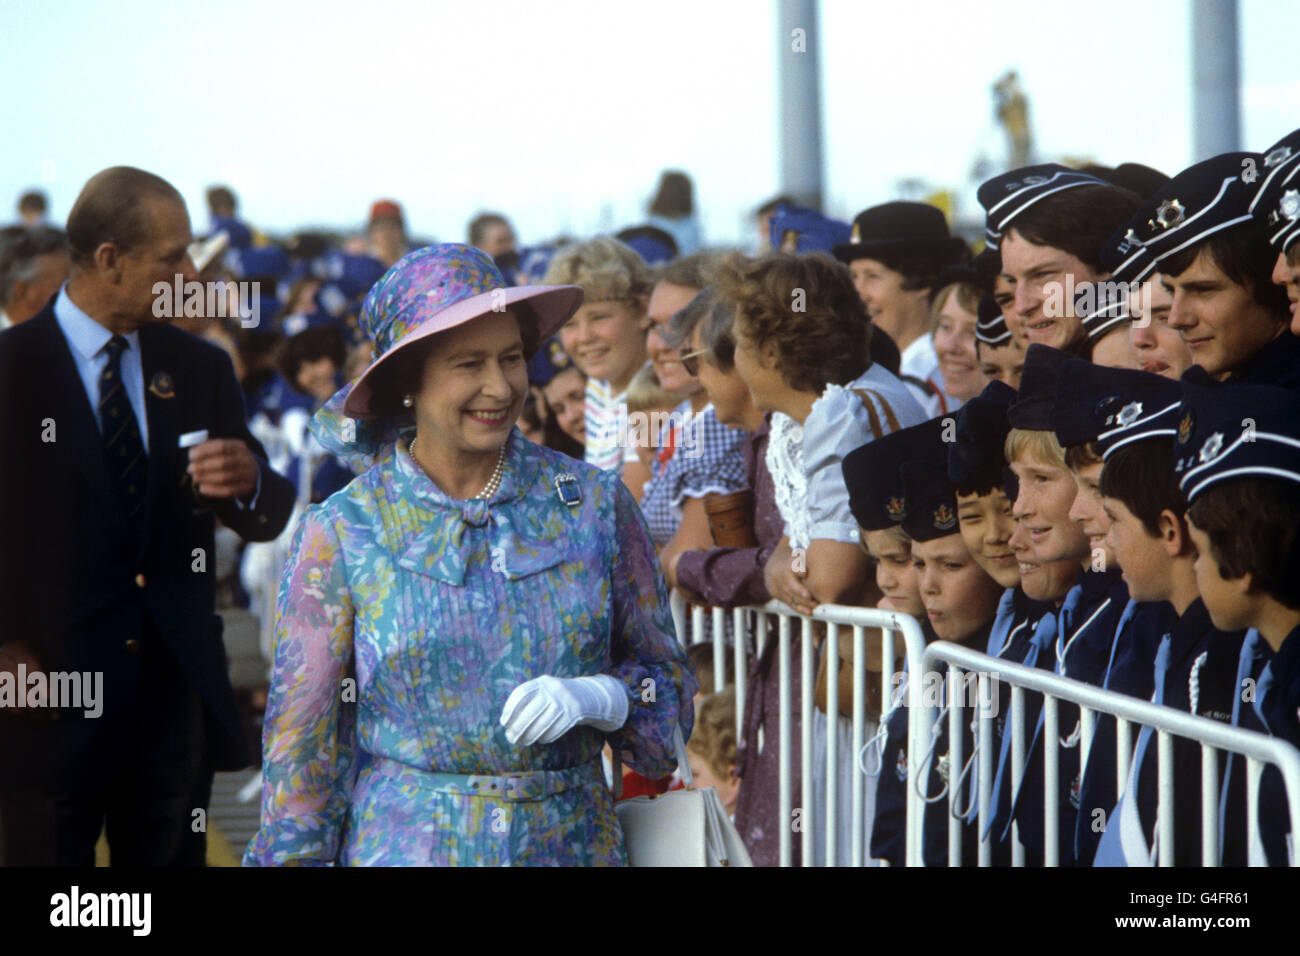 La reine Elizabeth II s'arrête pour accueillir les jeunes lorsqu'elle arrive au Chandler Sports Complex de Brisbane pour assister à des événements de natation pendant les Jeux du Commonwealth. Banque D'Images